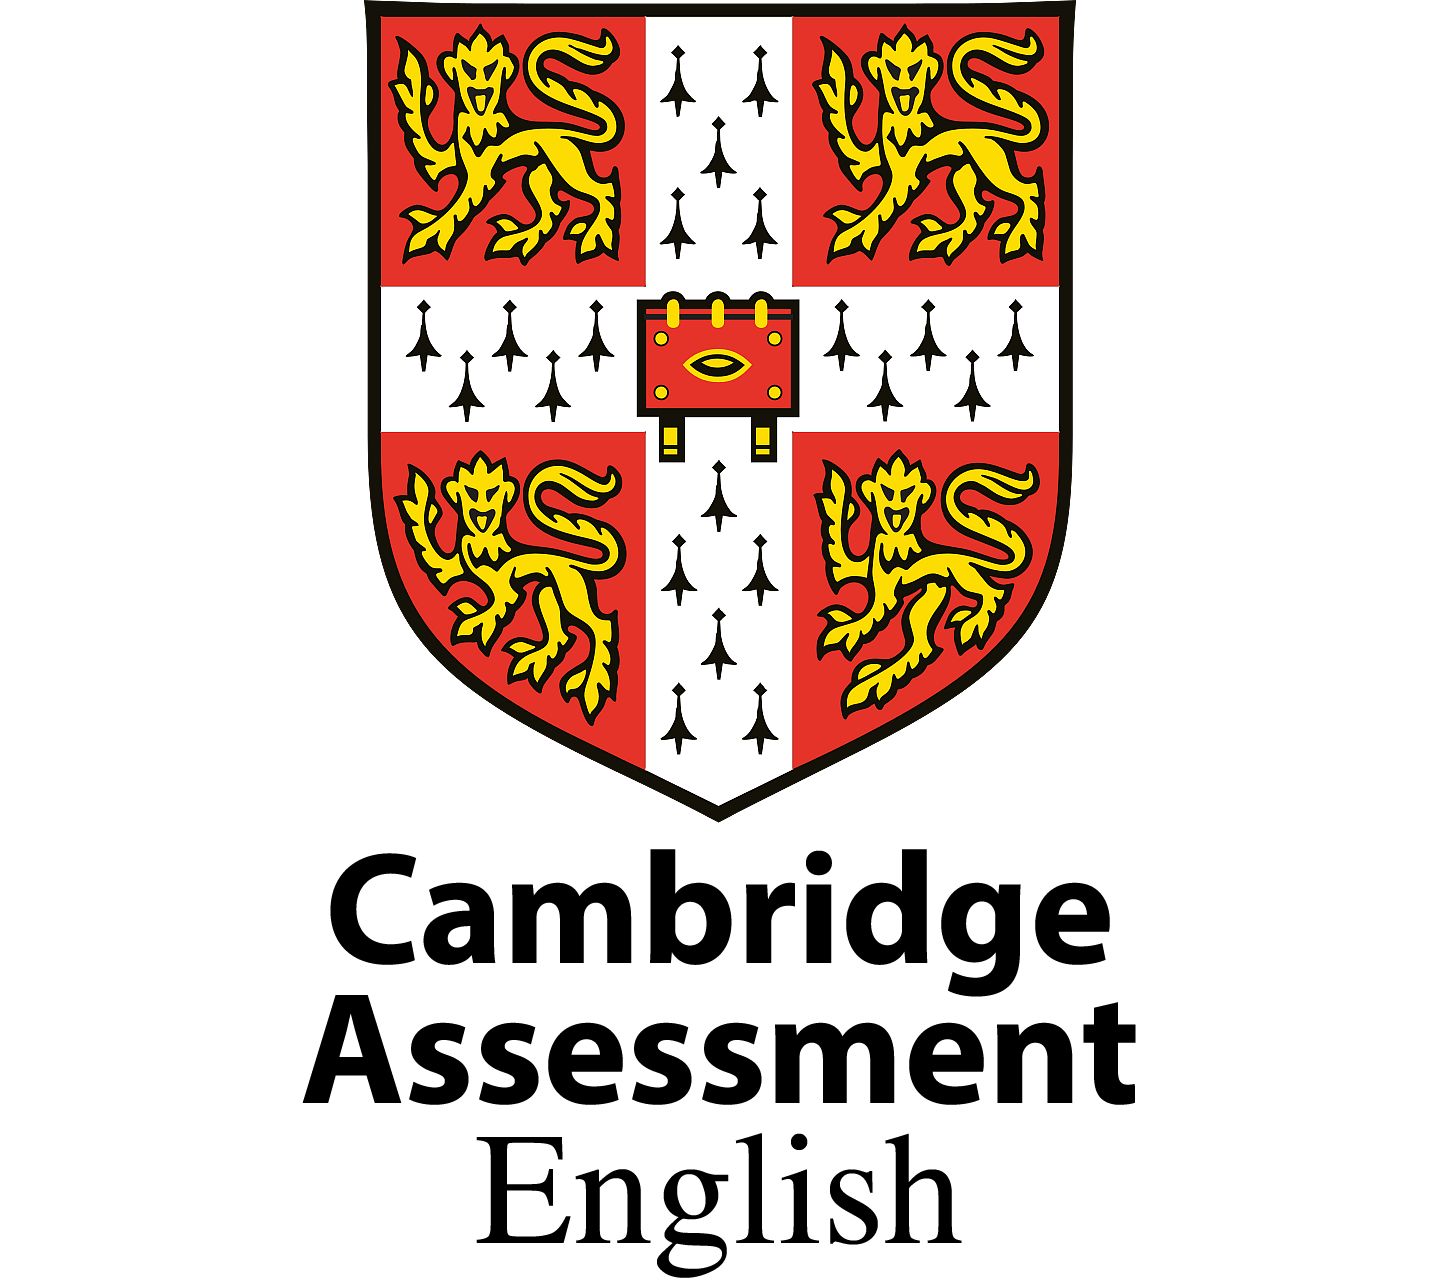 Cambridge English logo